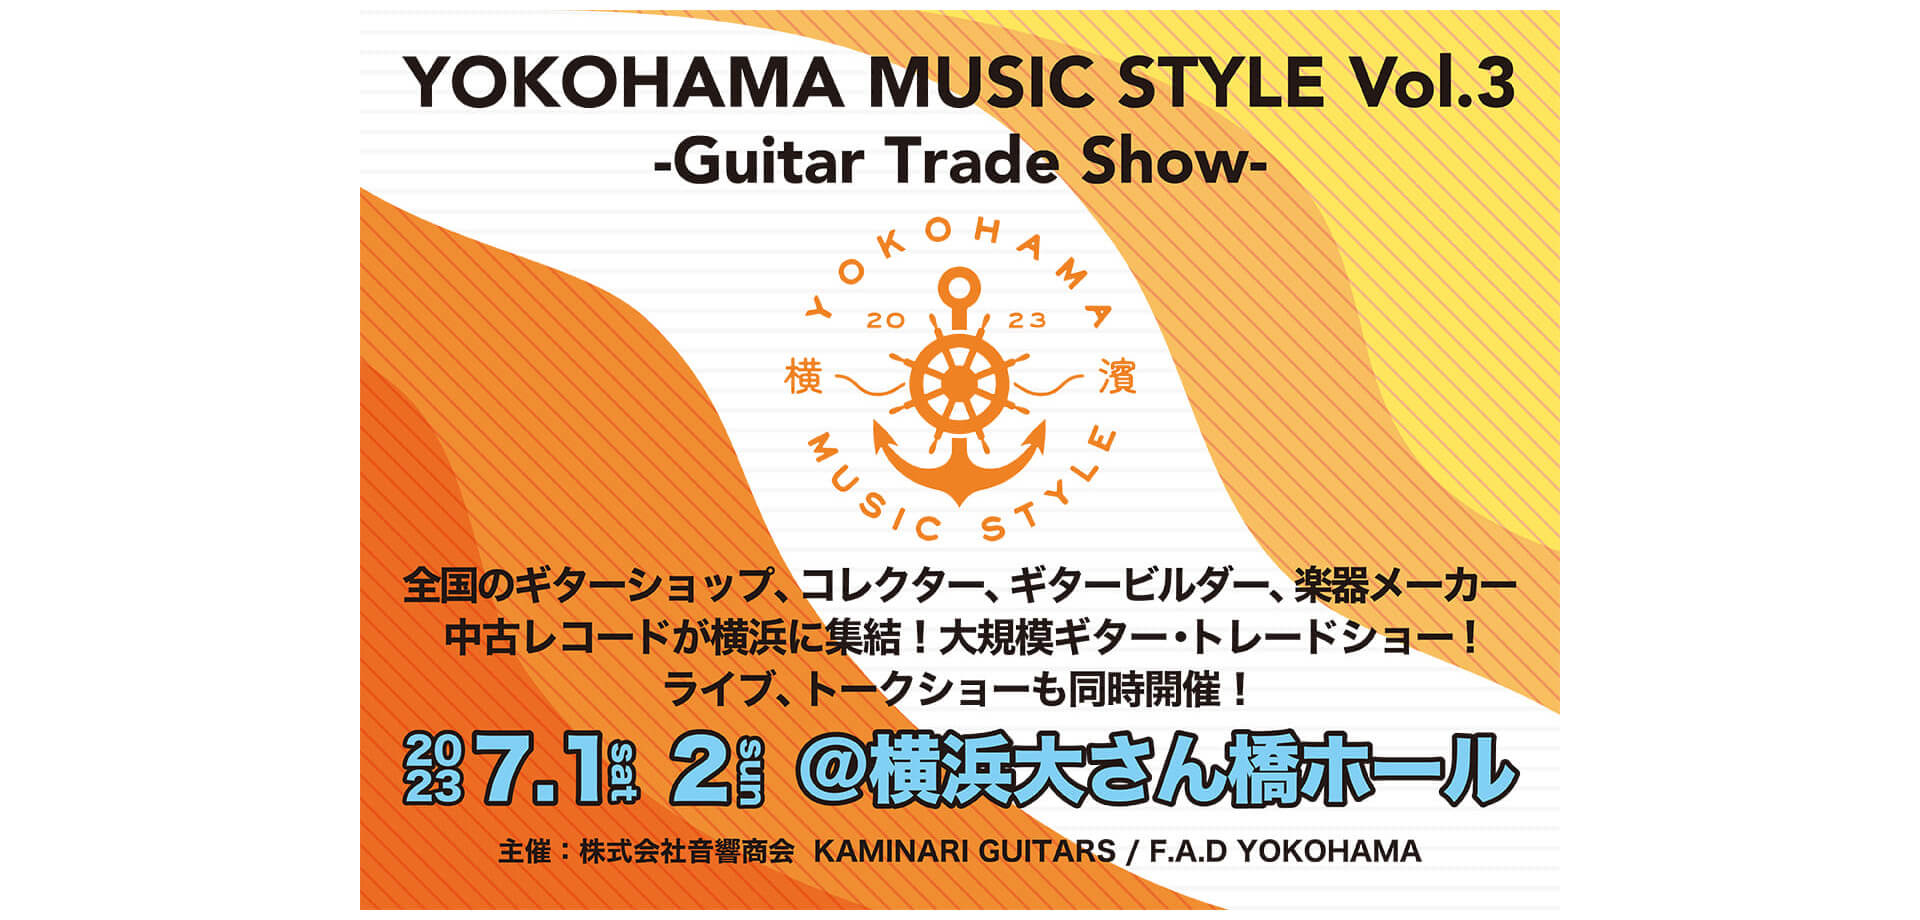 横浜大さん橋ホール YOKOHAMA MUSIC STYLE Vol.3 -Guitar Trade Show-